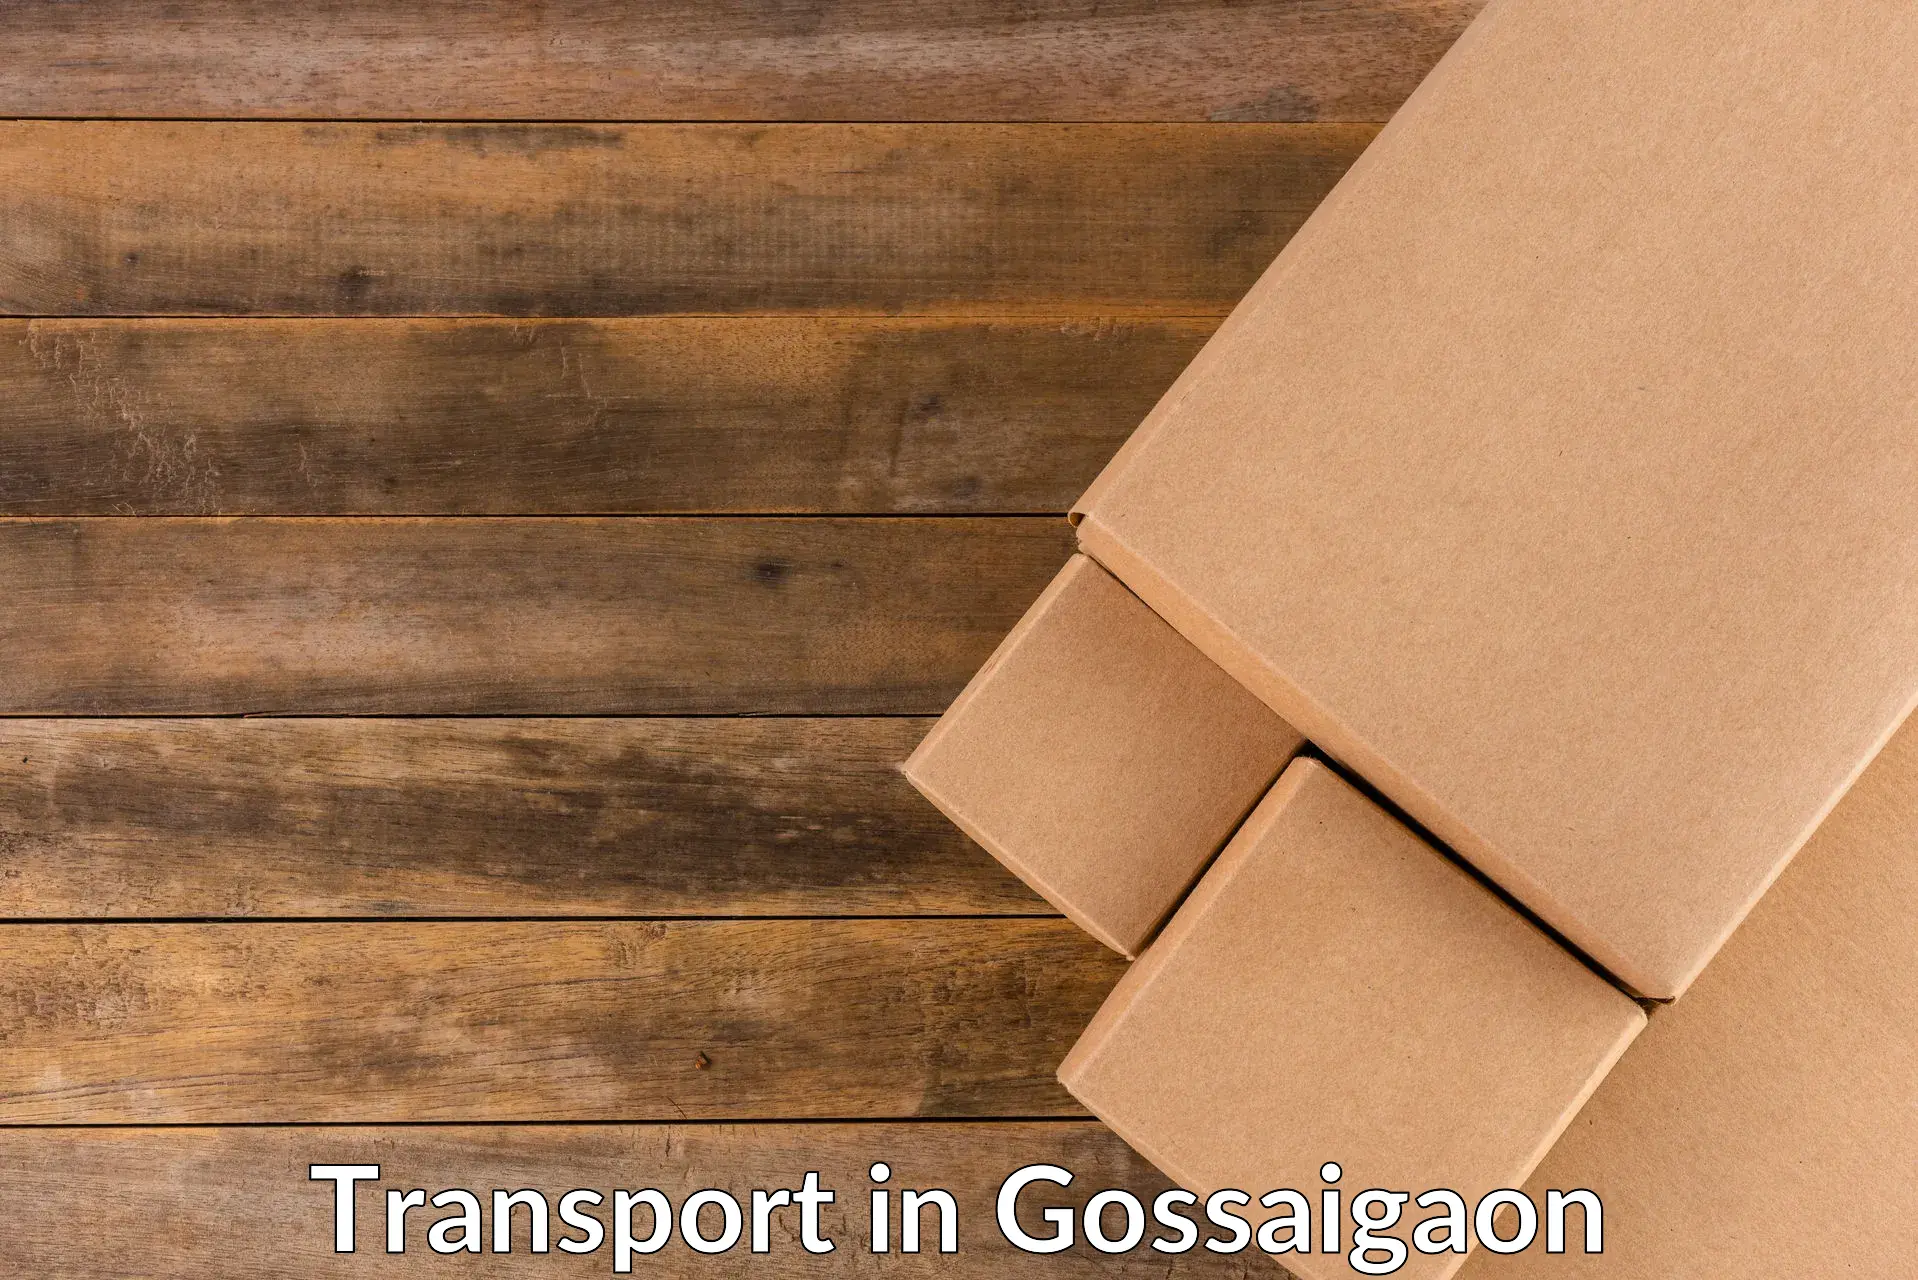 Online transport in Gossaigaon